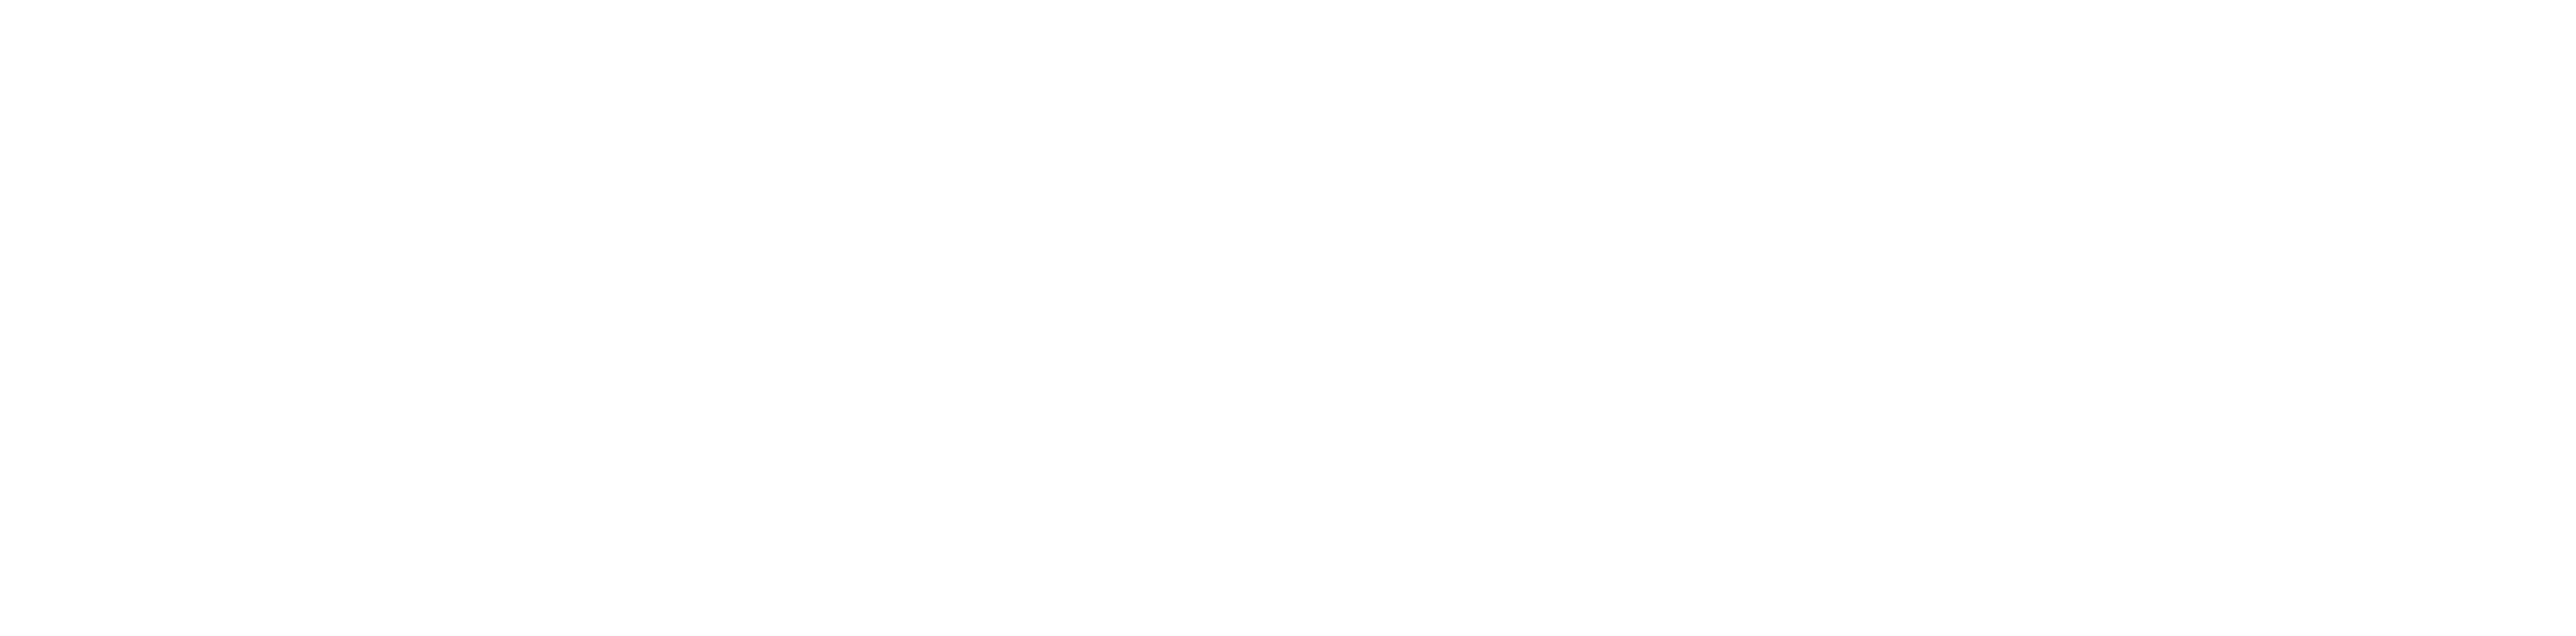 MC APP, MC APP - MicroStore, erp logiciel.